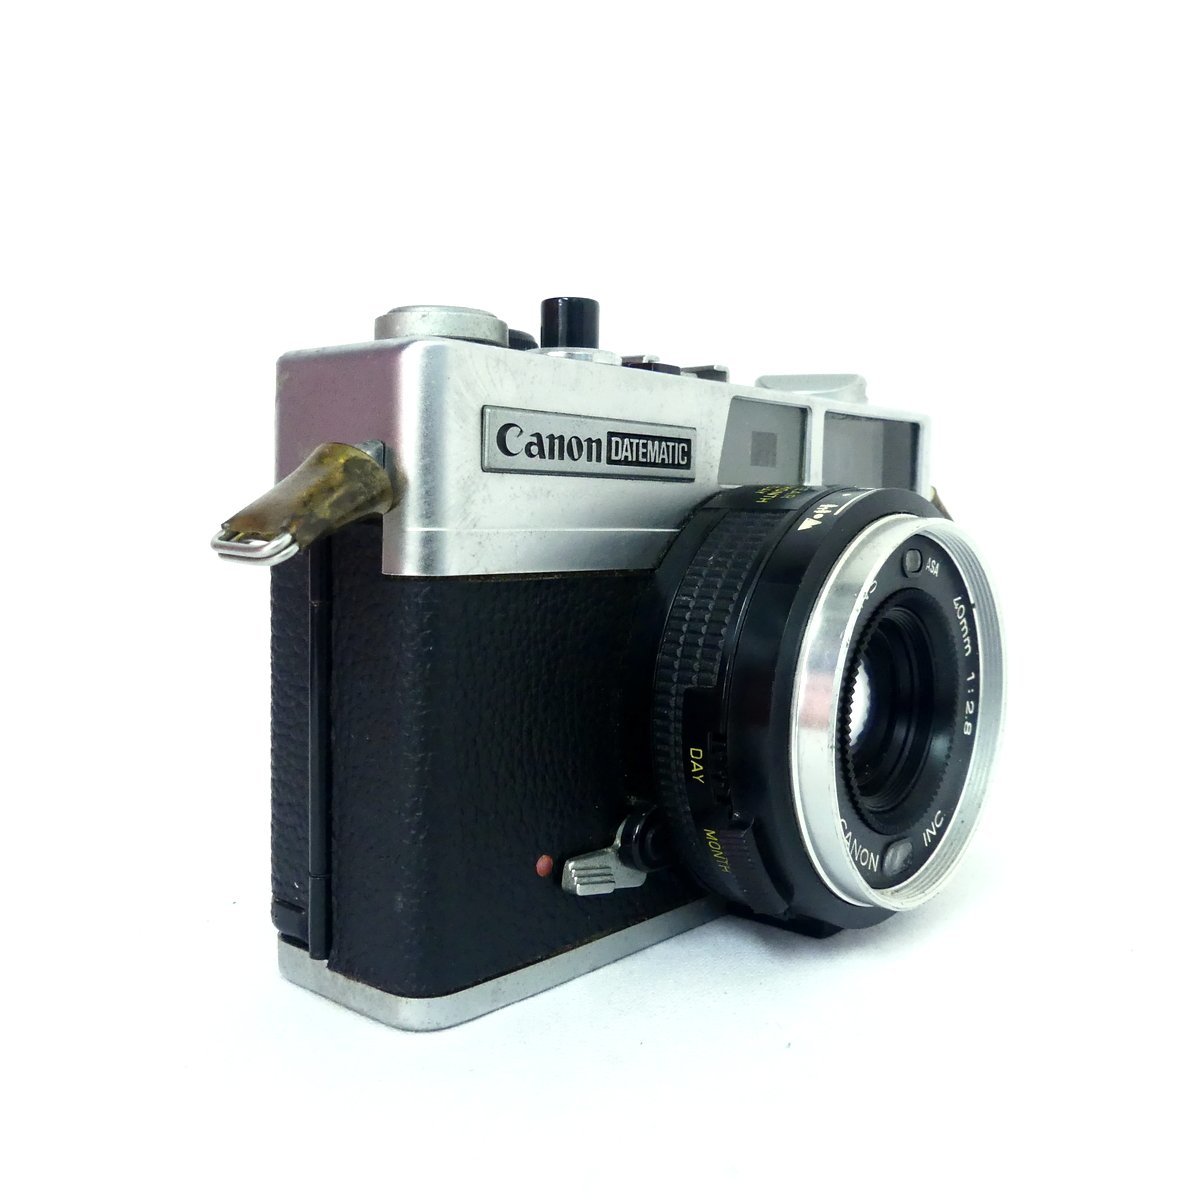 Canon キャノン DATEMATIC デイトマチック 40mm F2.8 フィルムカメラ 現状品 USED /2308Cの画像2